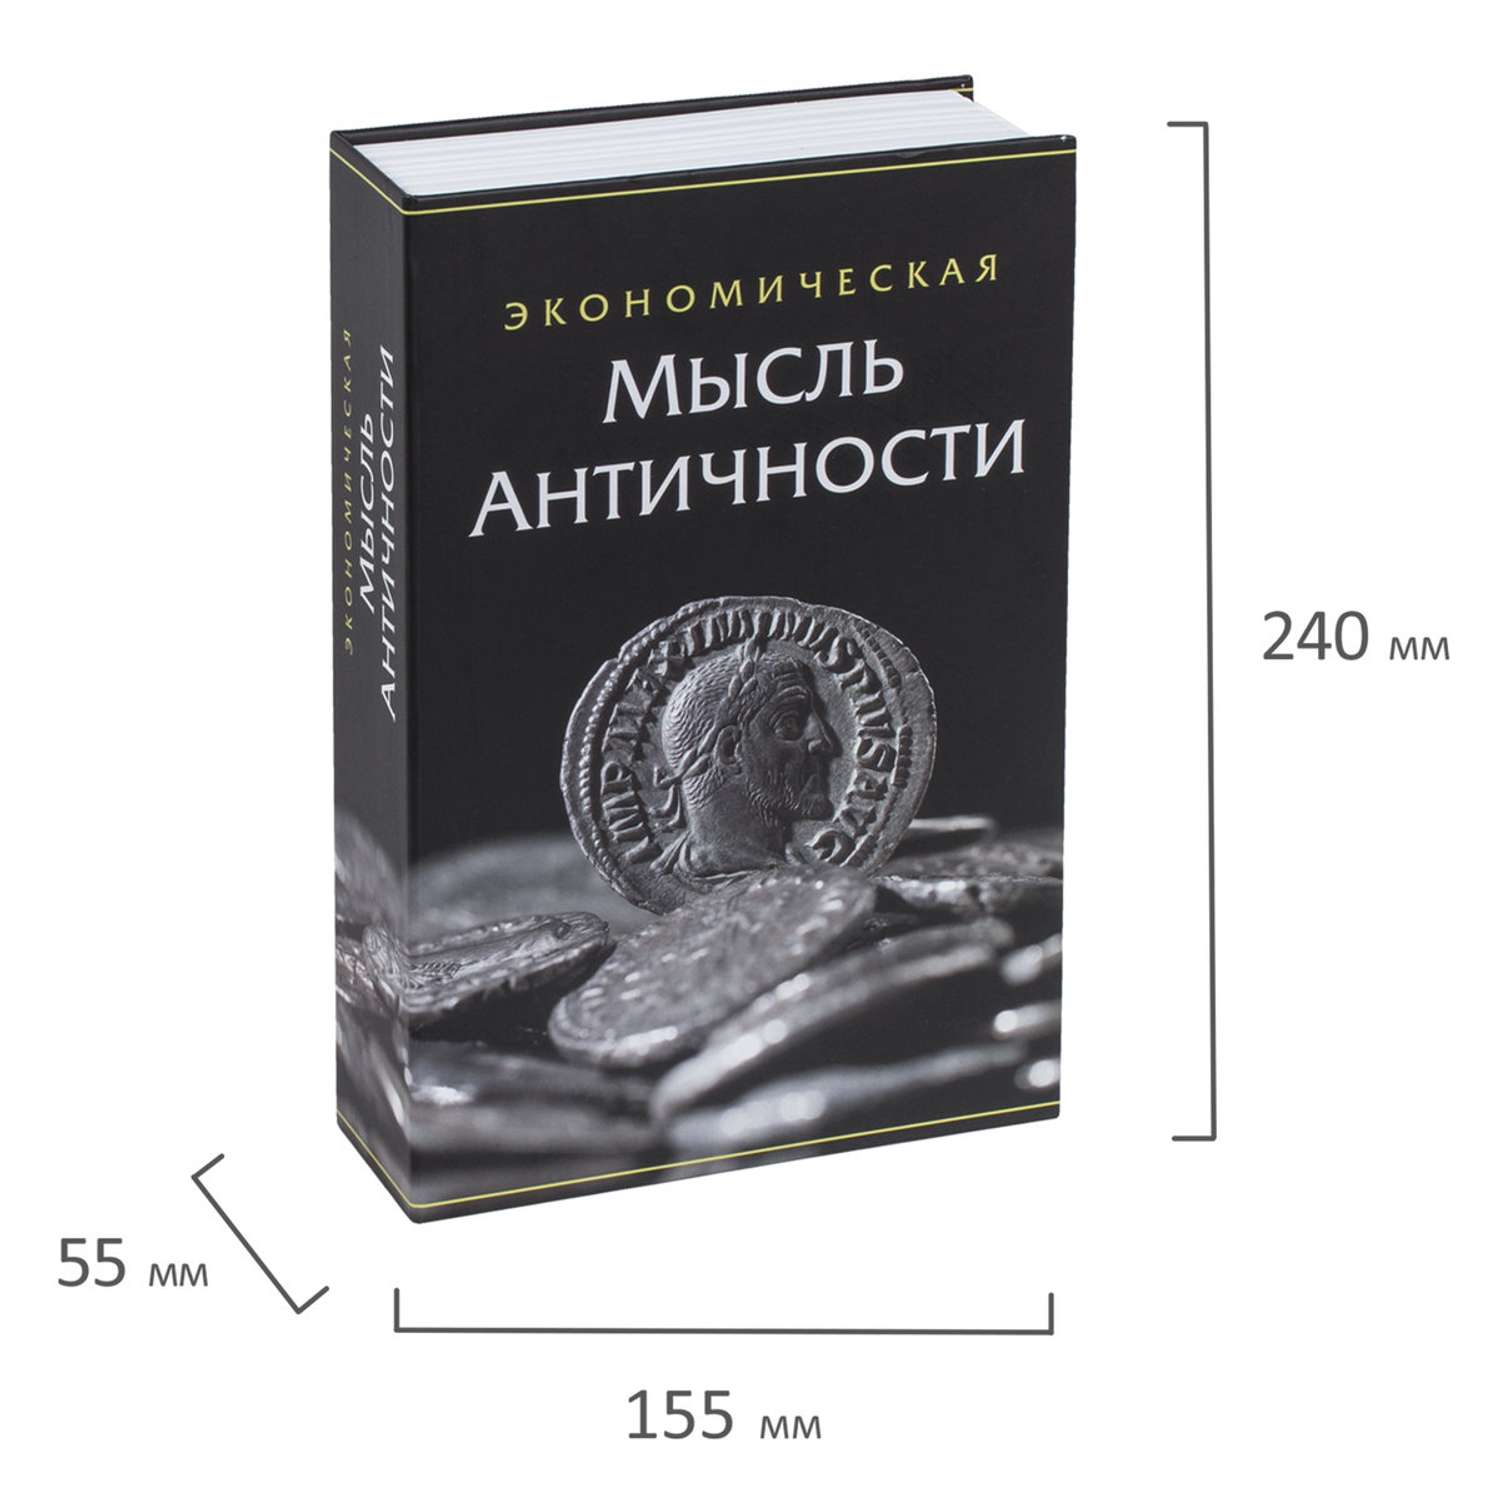 Сейф-книга Brauberg тайник для мелочей Экономическая мысль античности - фото 17